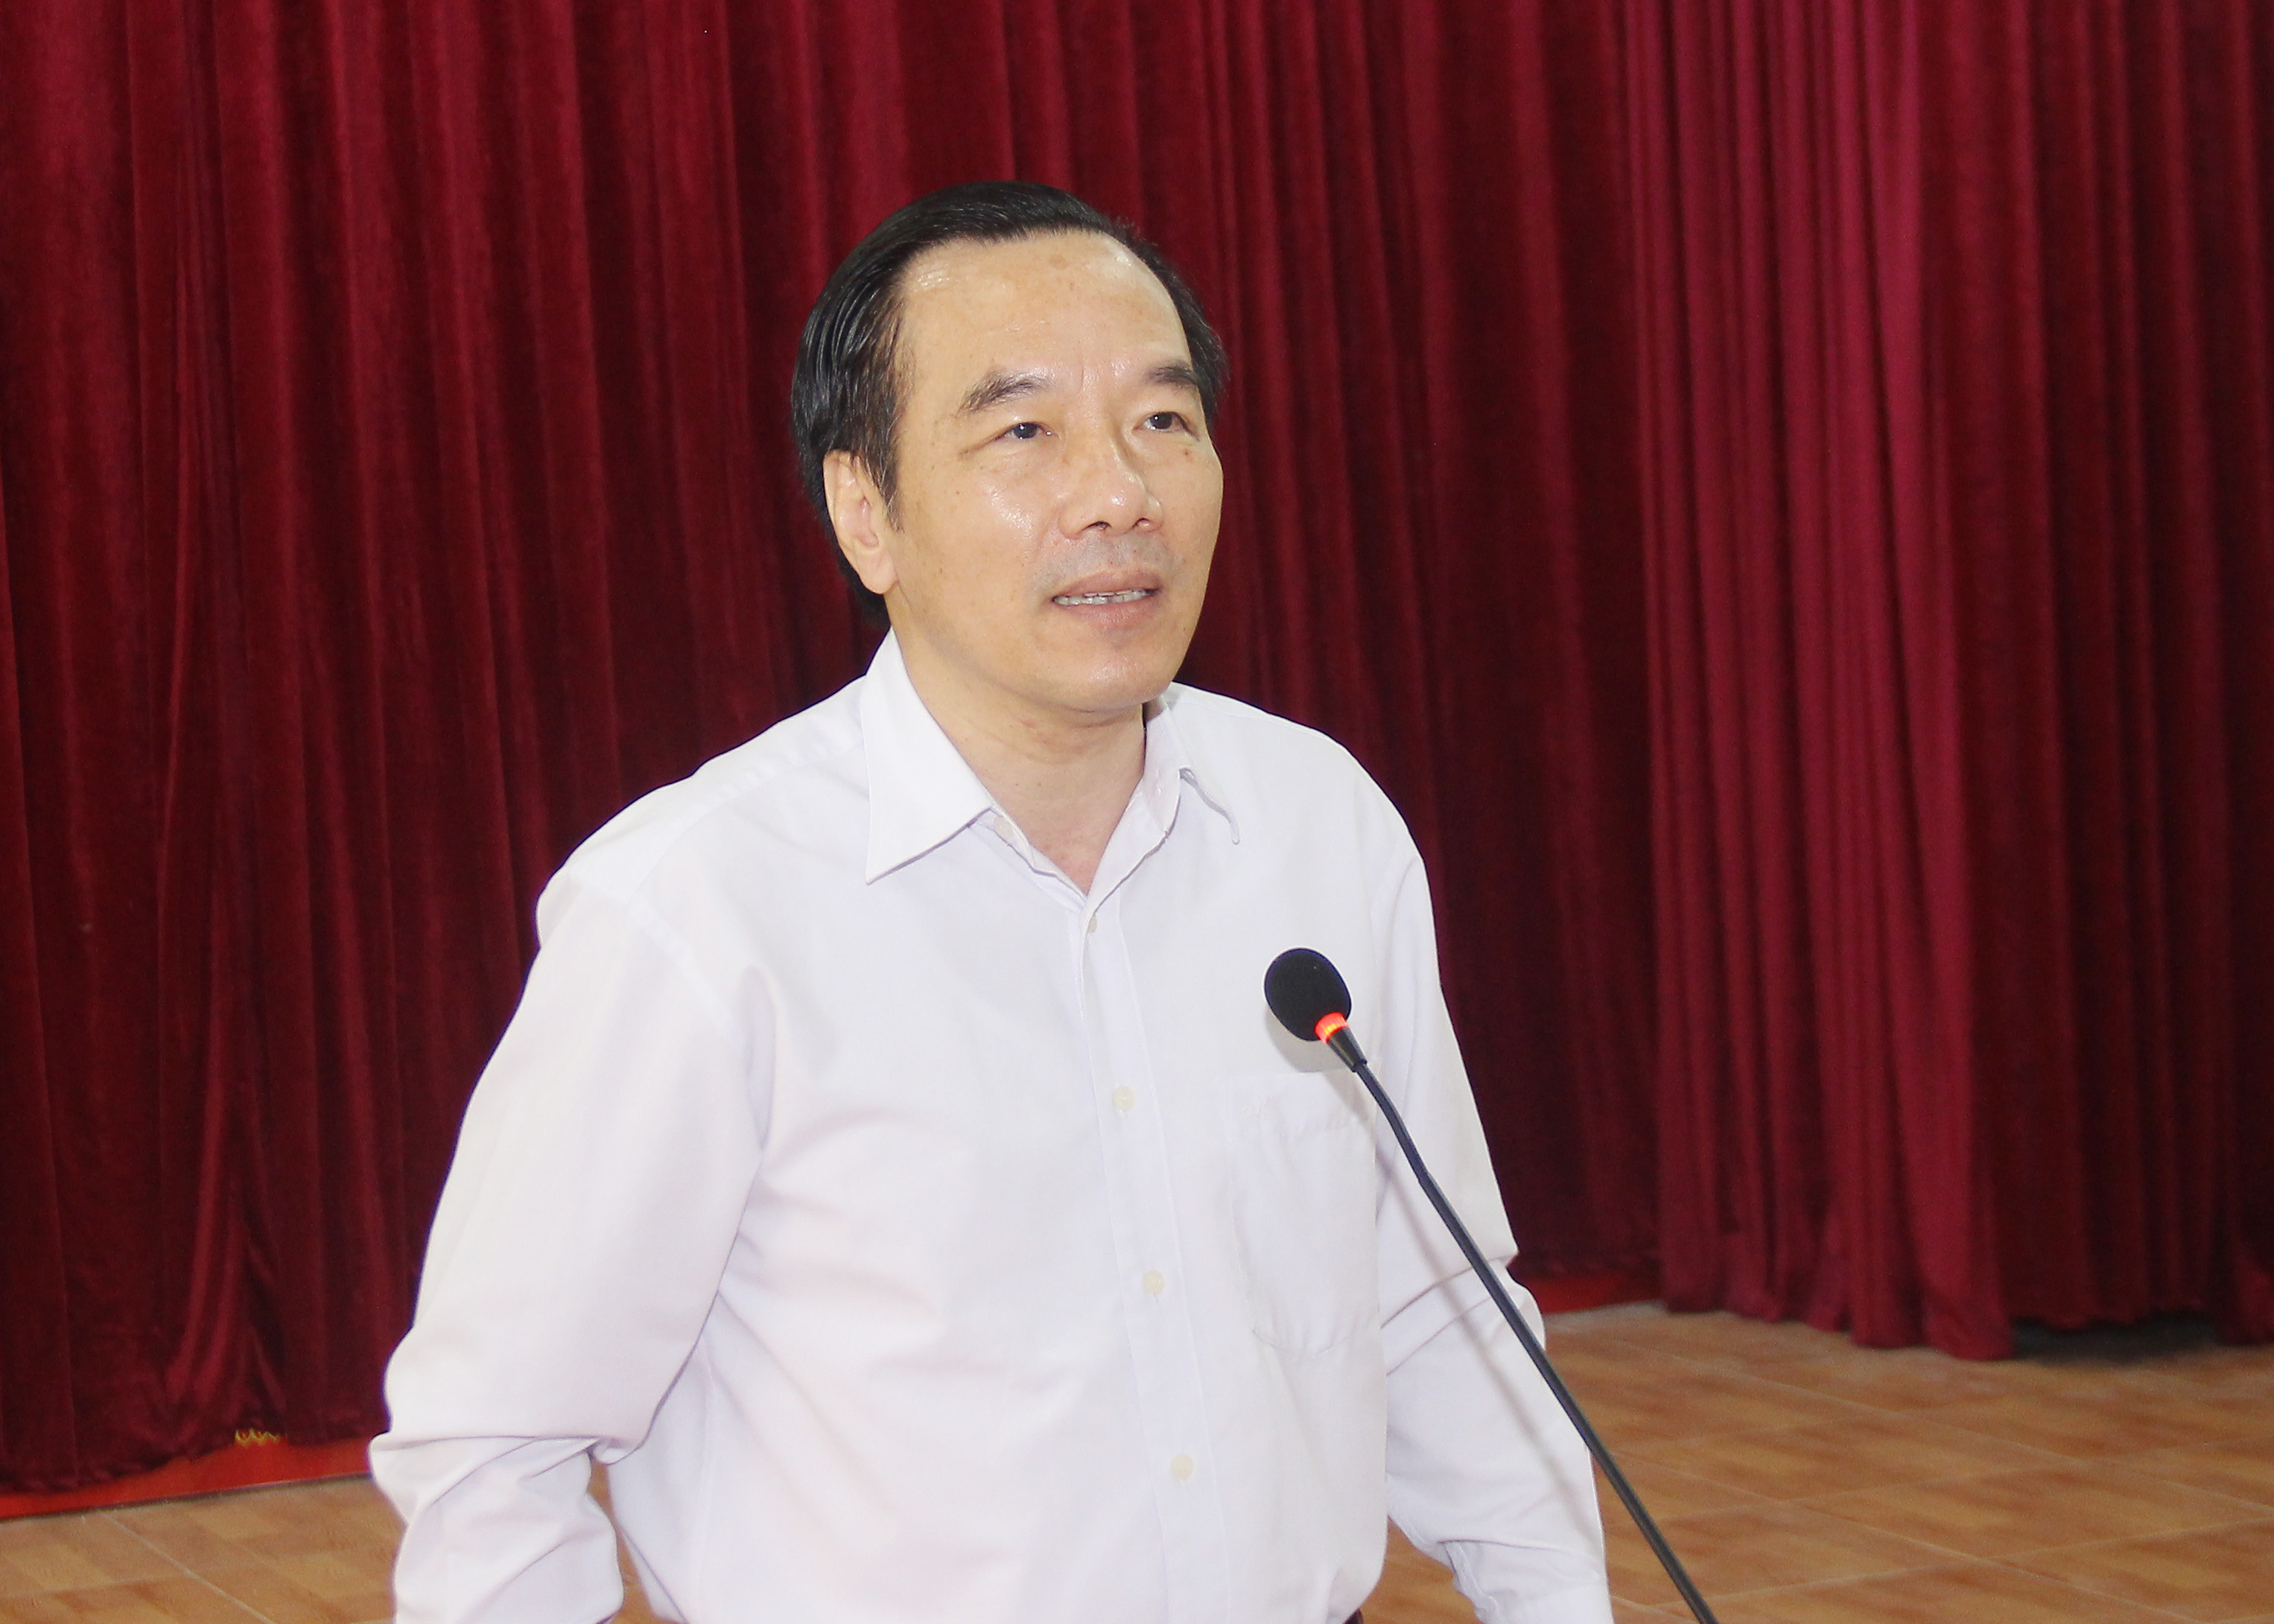 Đồng chí Ngô Sách Thực - Phó Chủ tịch Ủy ban Trung ương MTTQ Việt Nam đề nghị Ủy ban bầu cử tỉnh và Ủy ban bầu cử huyện Hưng Nguyên